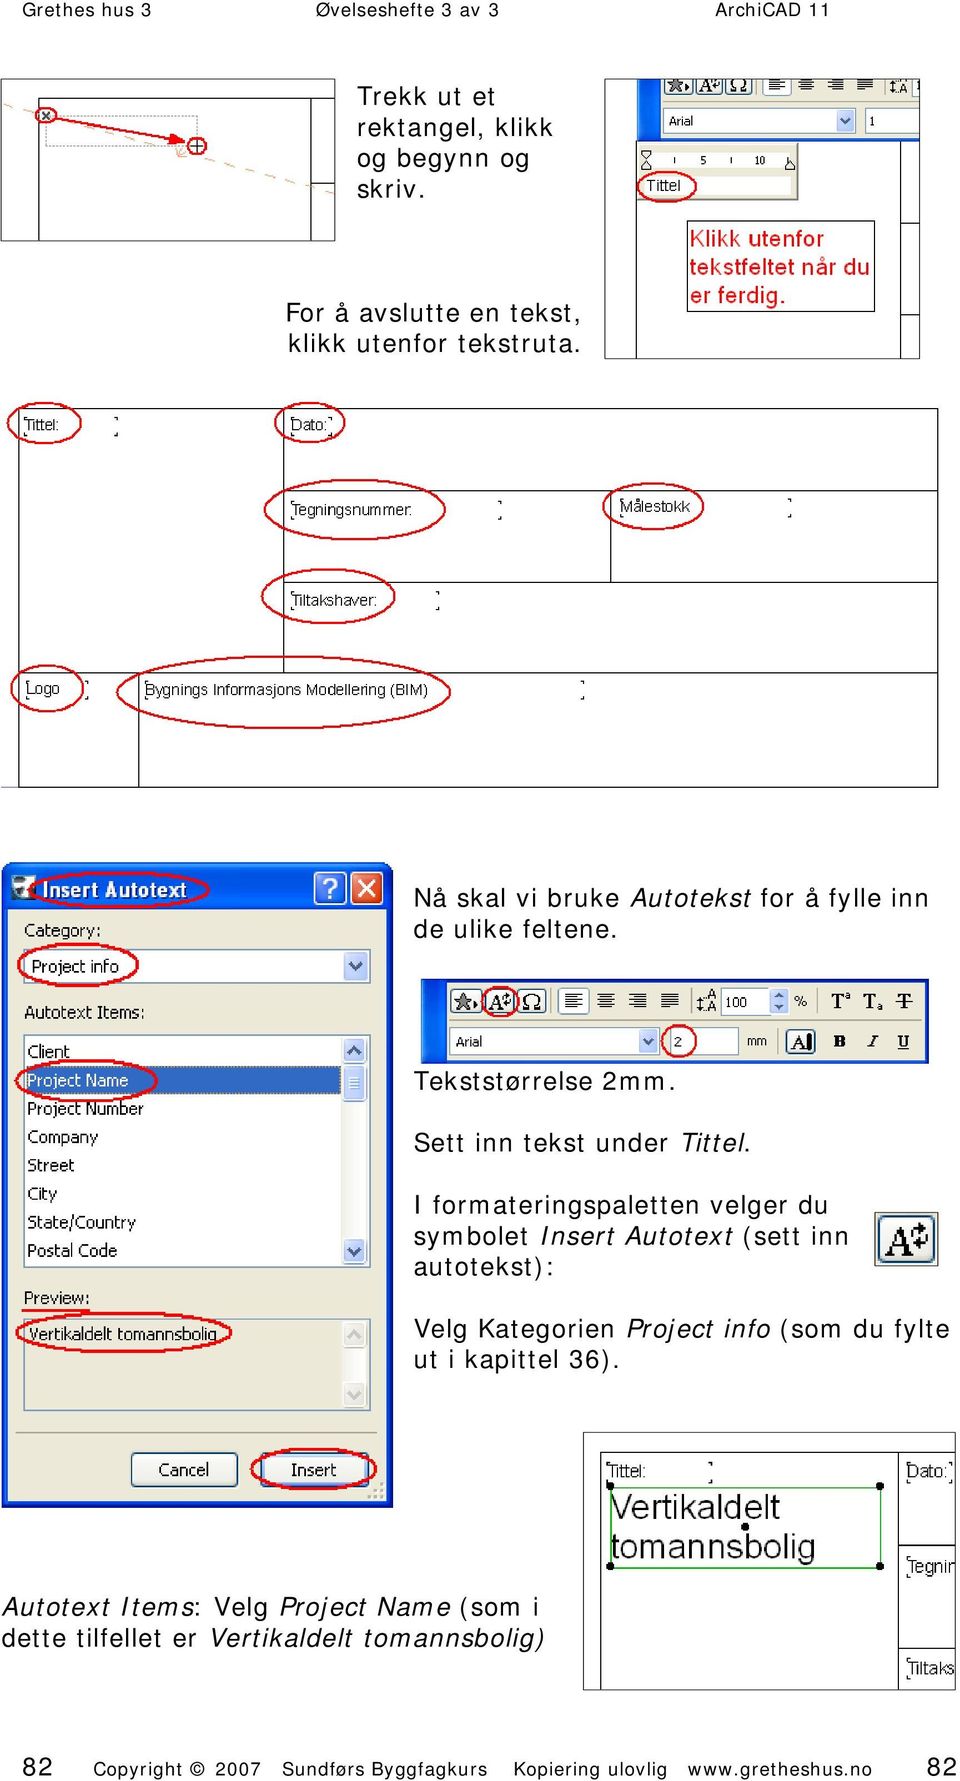 I formateringspaletten velger du symbolet Insert Autotext (sett inn autotekst): Velg Kategorien Project info (som du fylte ut i